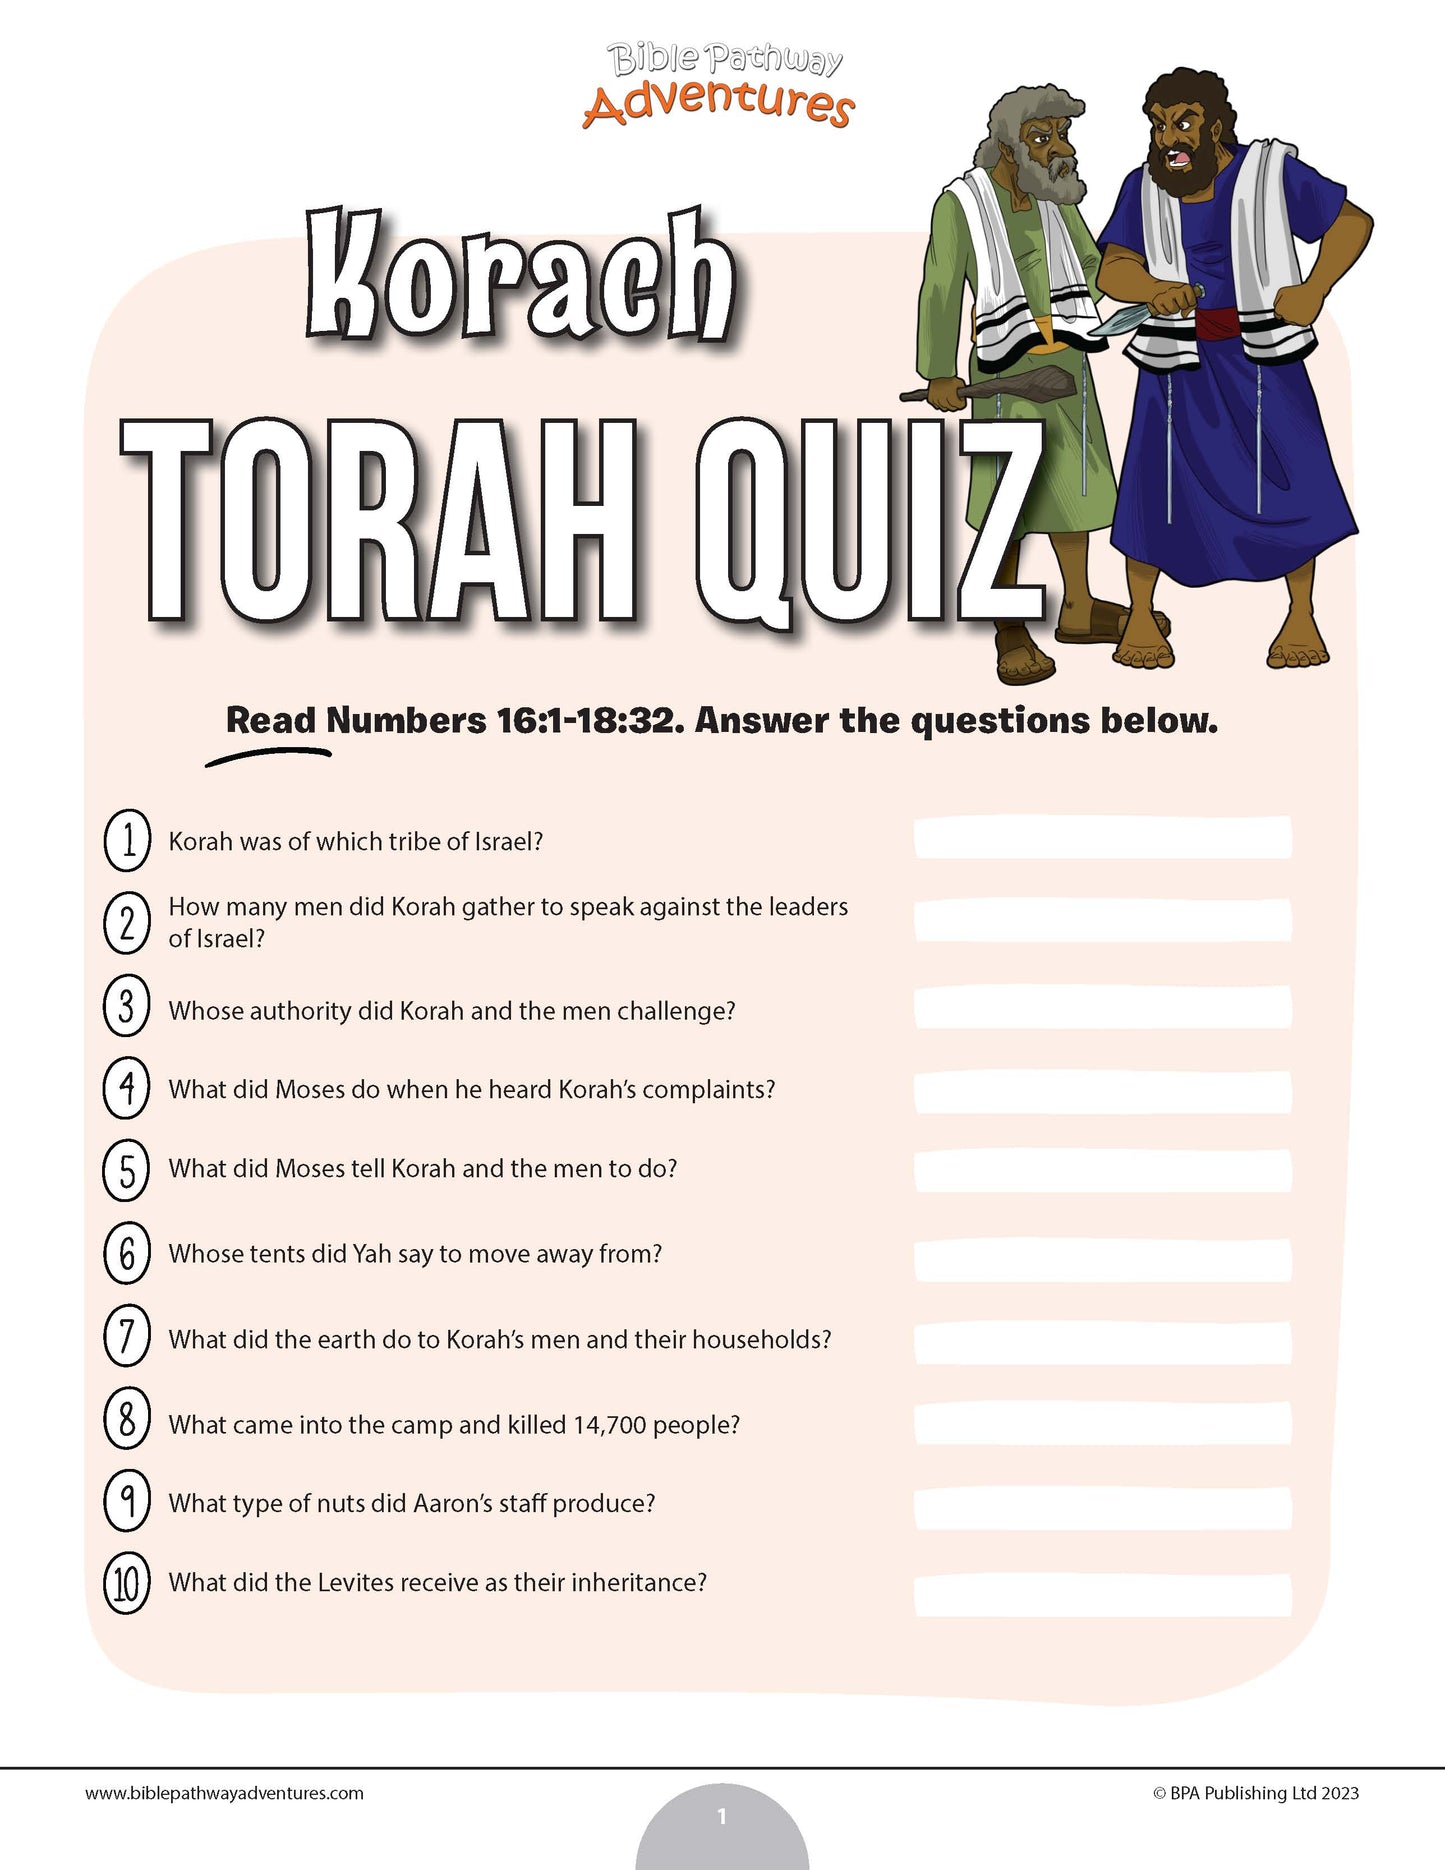 Korach Torah quiz